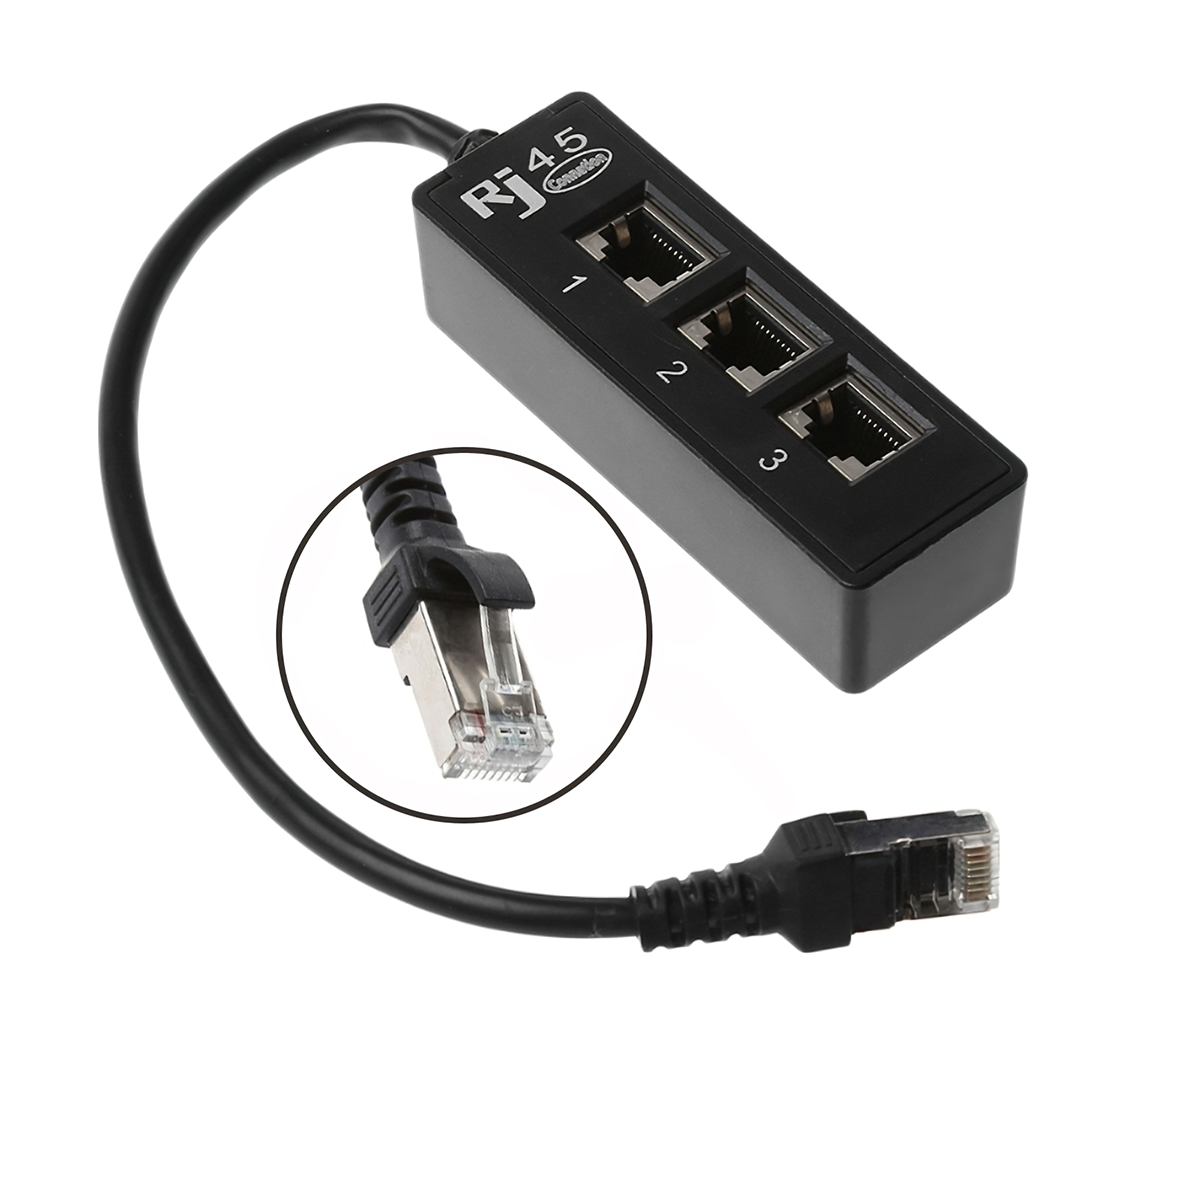 

Сетевой разветвитель кабеля LAN Ethernet RJ45 Сеть с 1 мужчиной на 3 женщины Коннектор Конвертер сетевого разветвителя